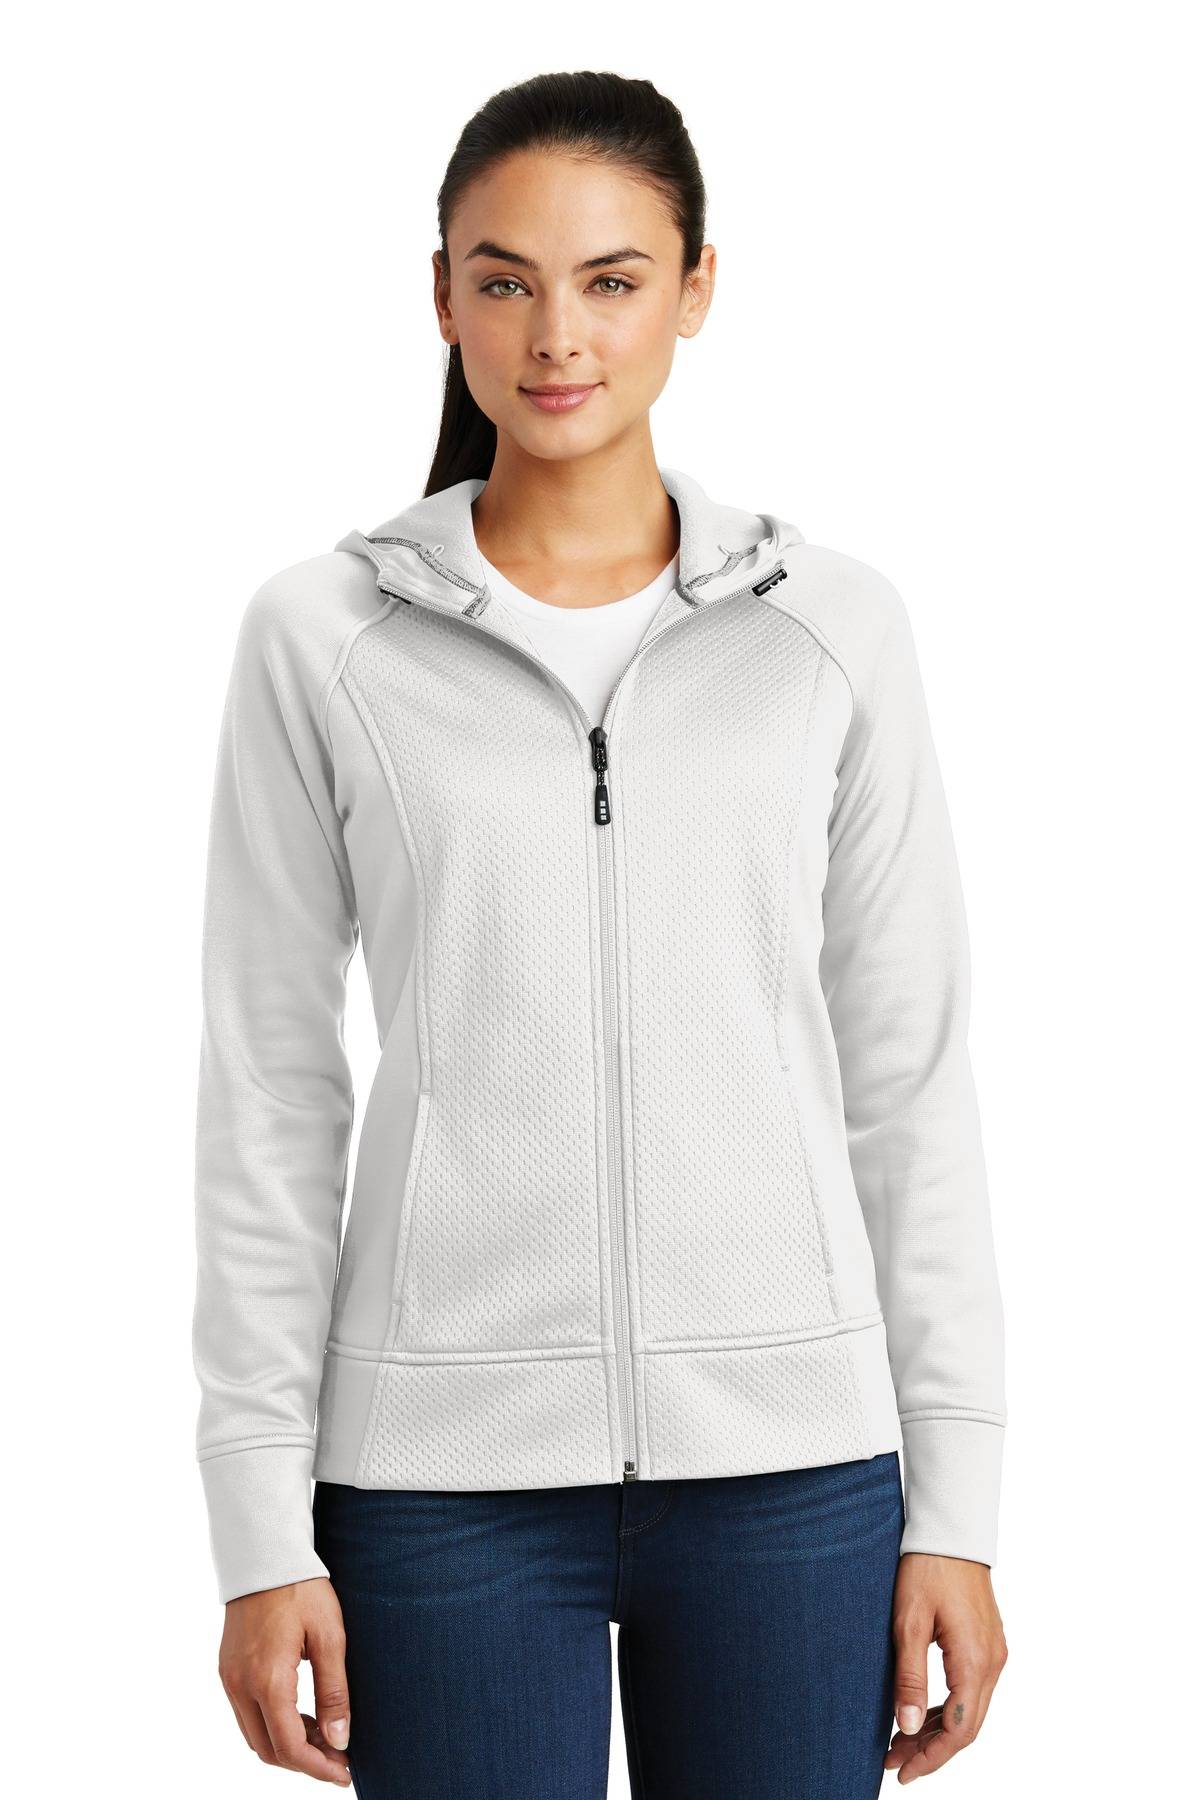 Sport-Tek LST295 Womens Long Sleeve Rival Tech Fleece Full Zip Hooded Jacket With Pockets